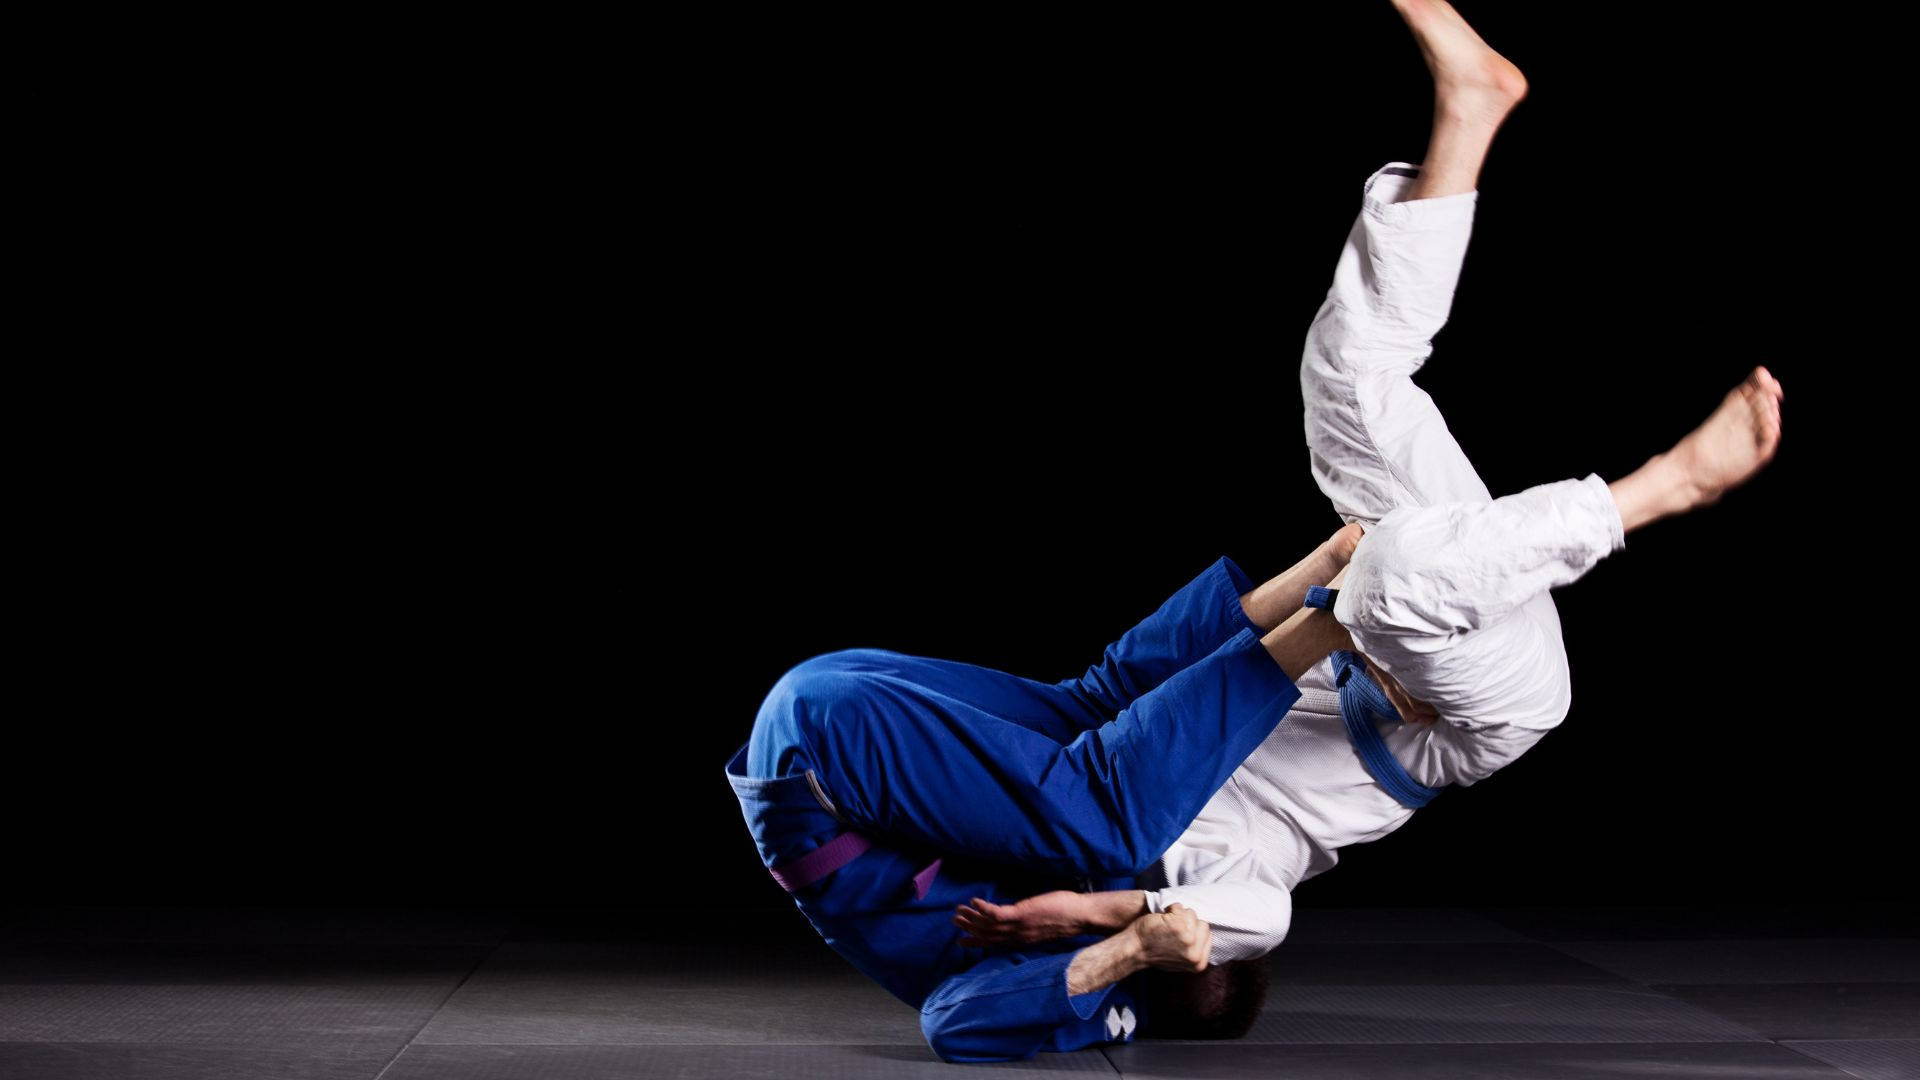 Brazilian Jiu-jitsu Sports Training Workout Background